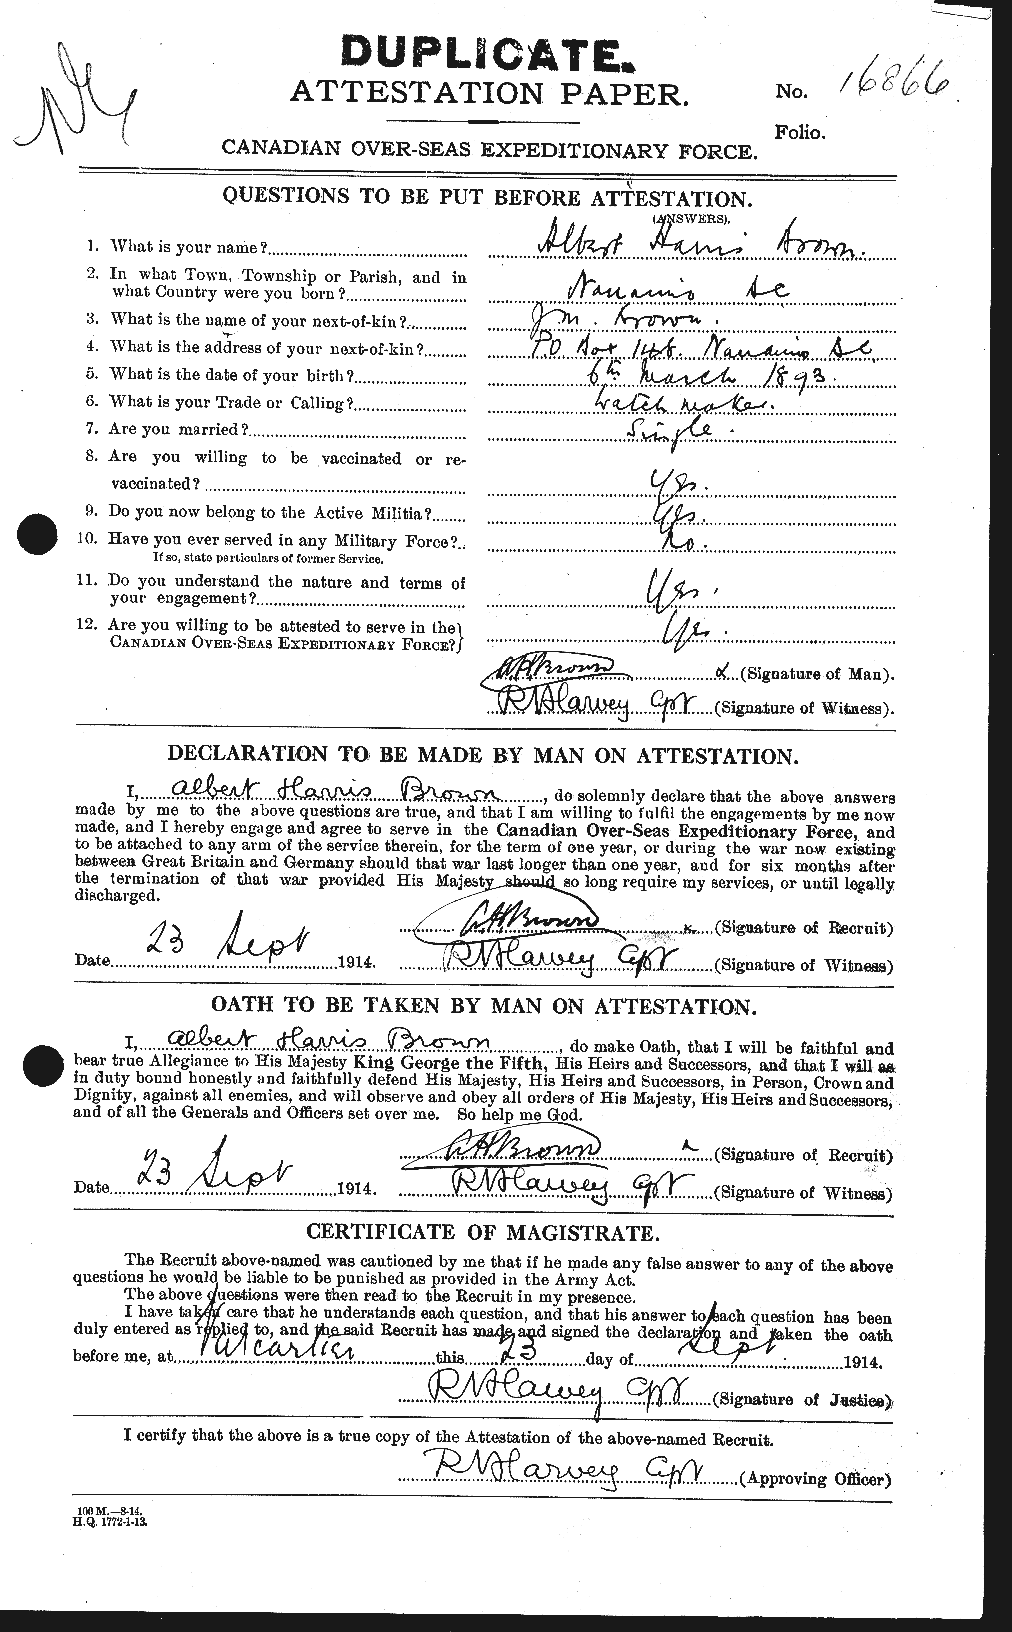 Dossiers du Personnel de la Première Guerre mondiale - CEC 266916a